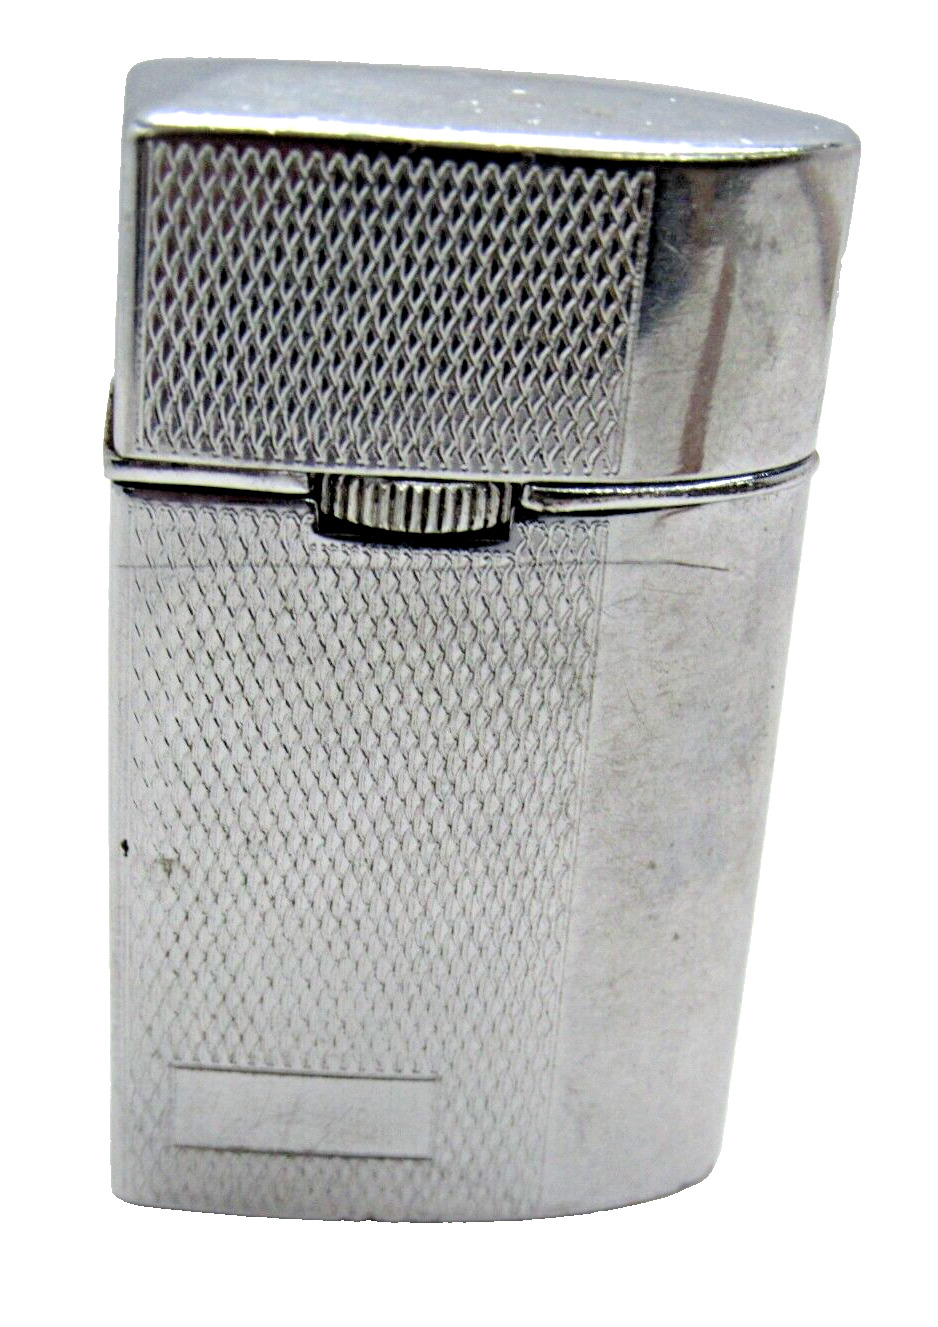 🔥Swank Art Deco J2 Windproof Brushed/High Polished Chrome Lighter Vintage #Z3-2